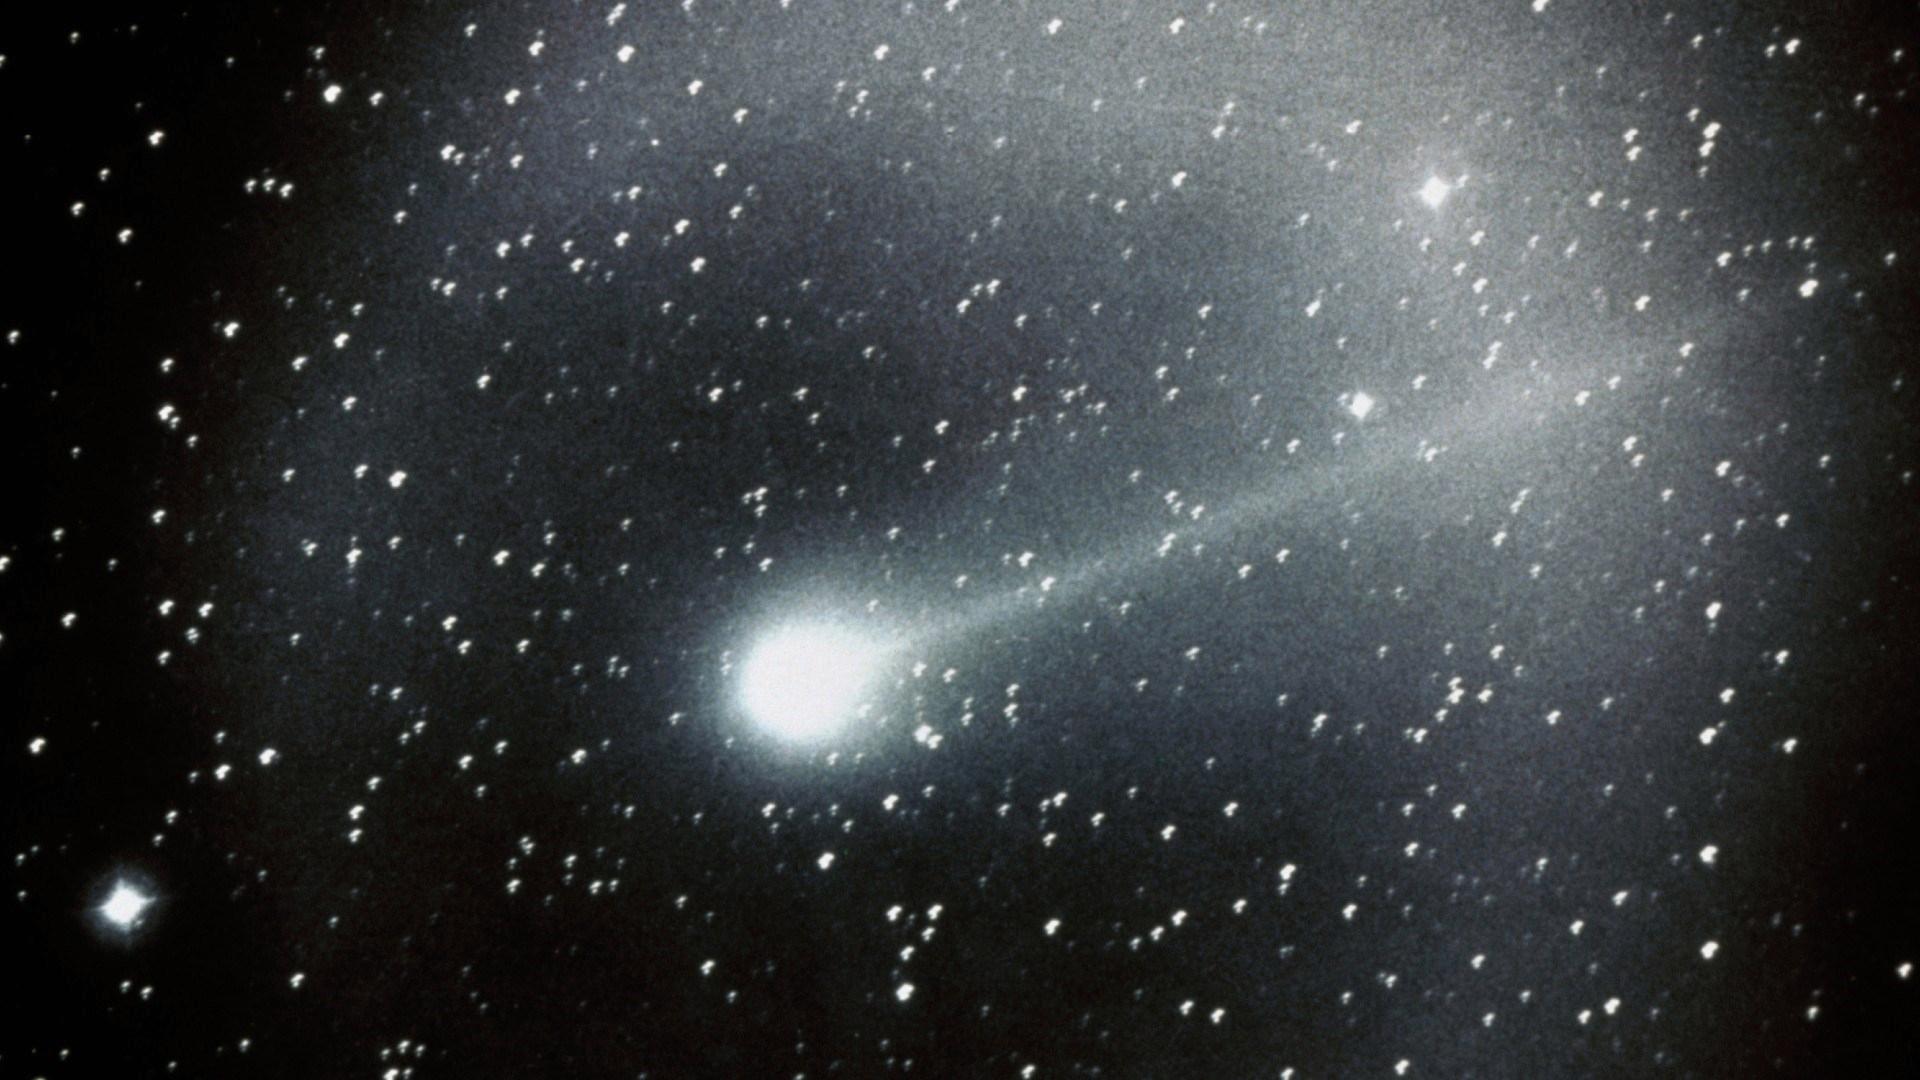 Halley kuyruklu yıldızı 38 yıl sürecek Dünya’ya dönüş yolculuğuna başladı